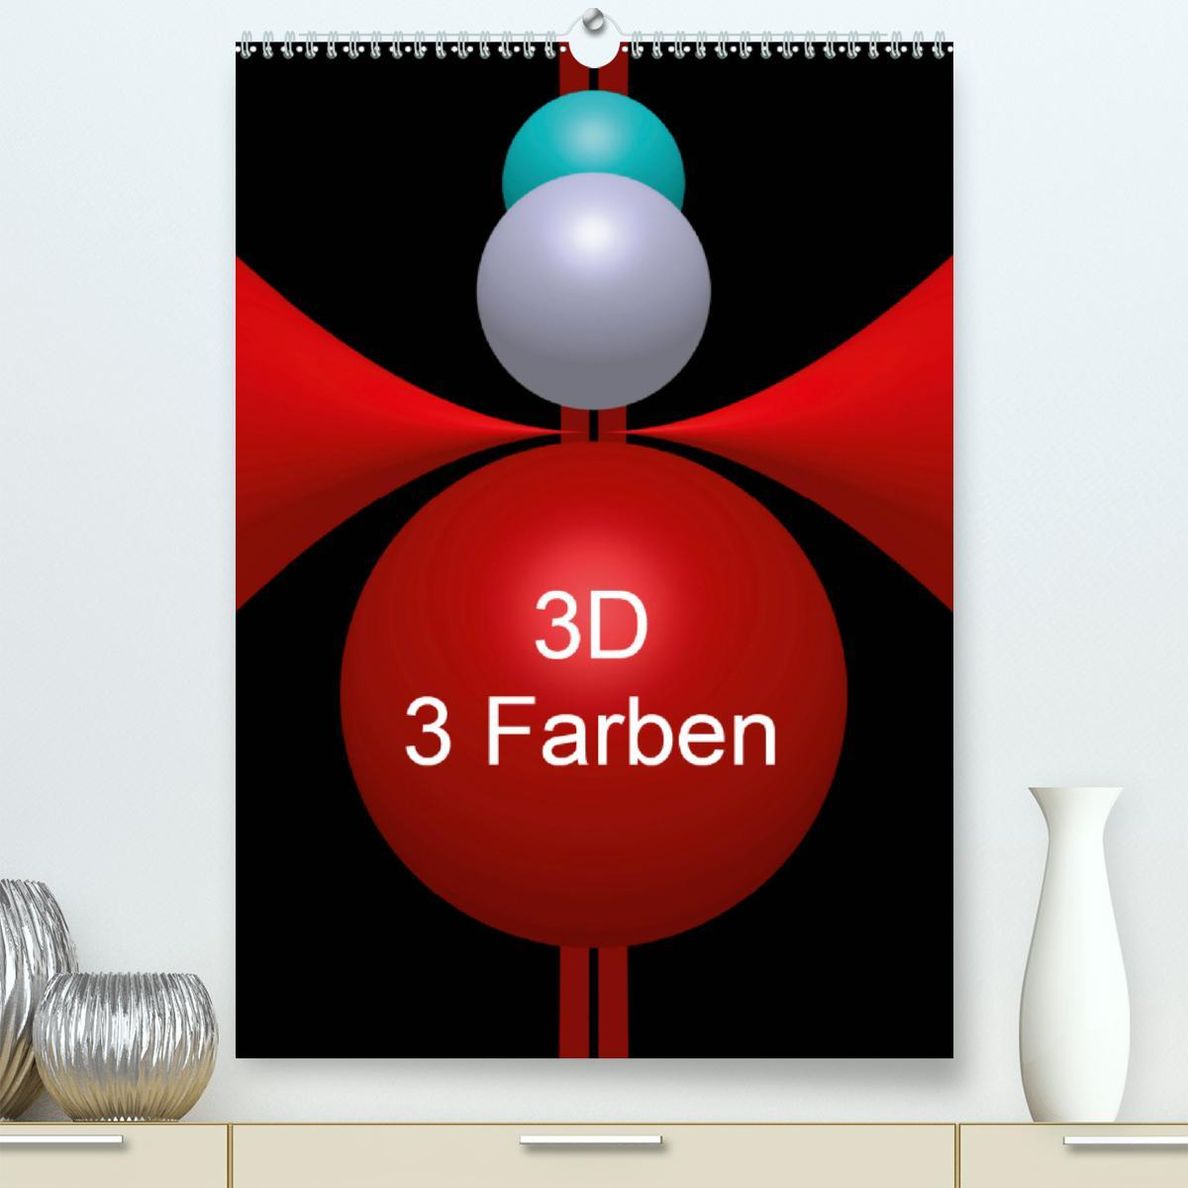 3D - 3 Farben Premium-Kalender 2020 DIN A2 hoch - Kalender bestellen